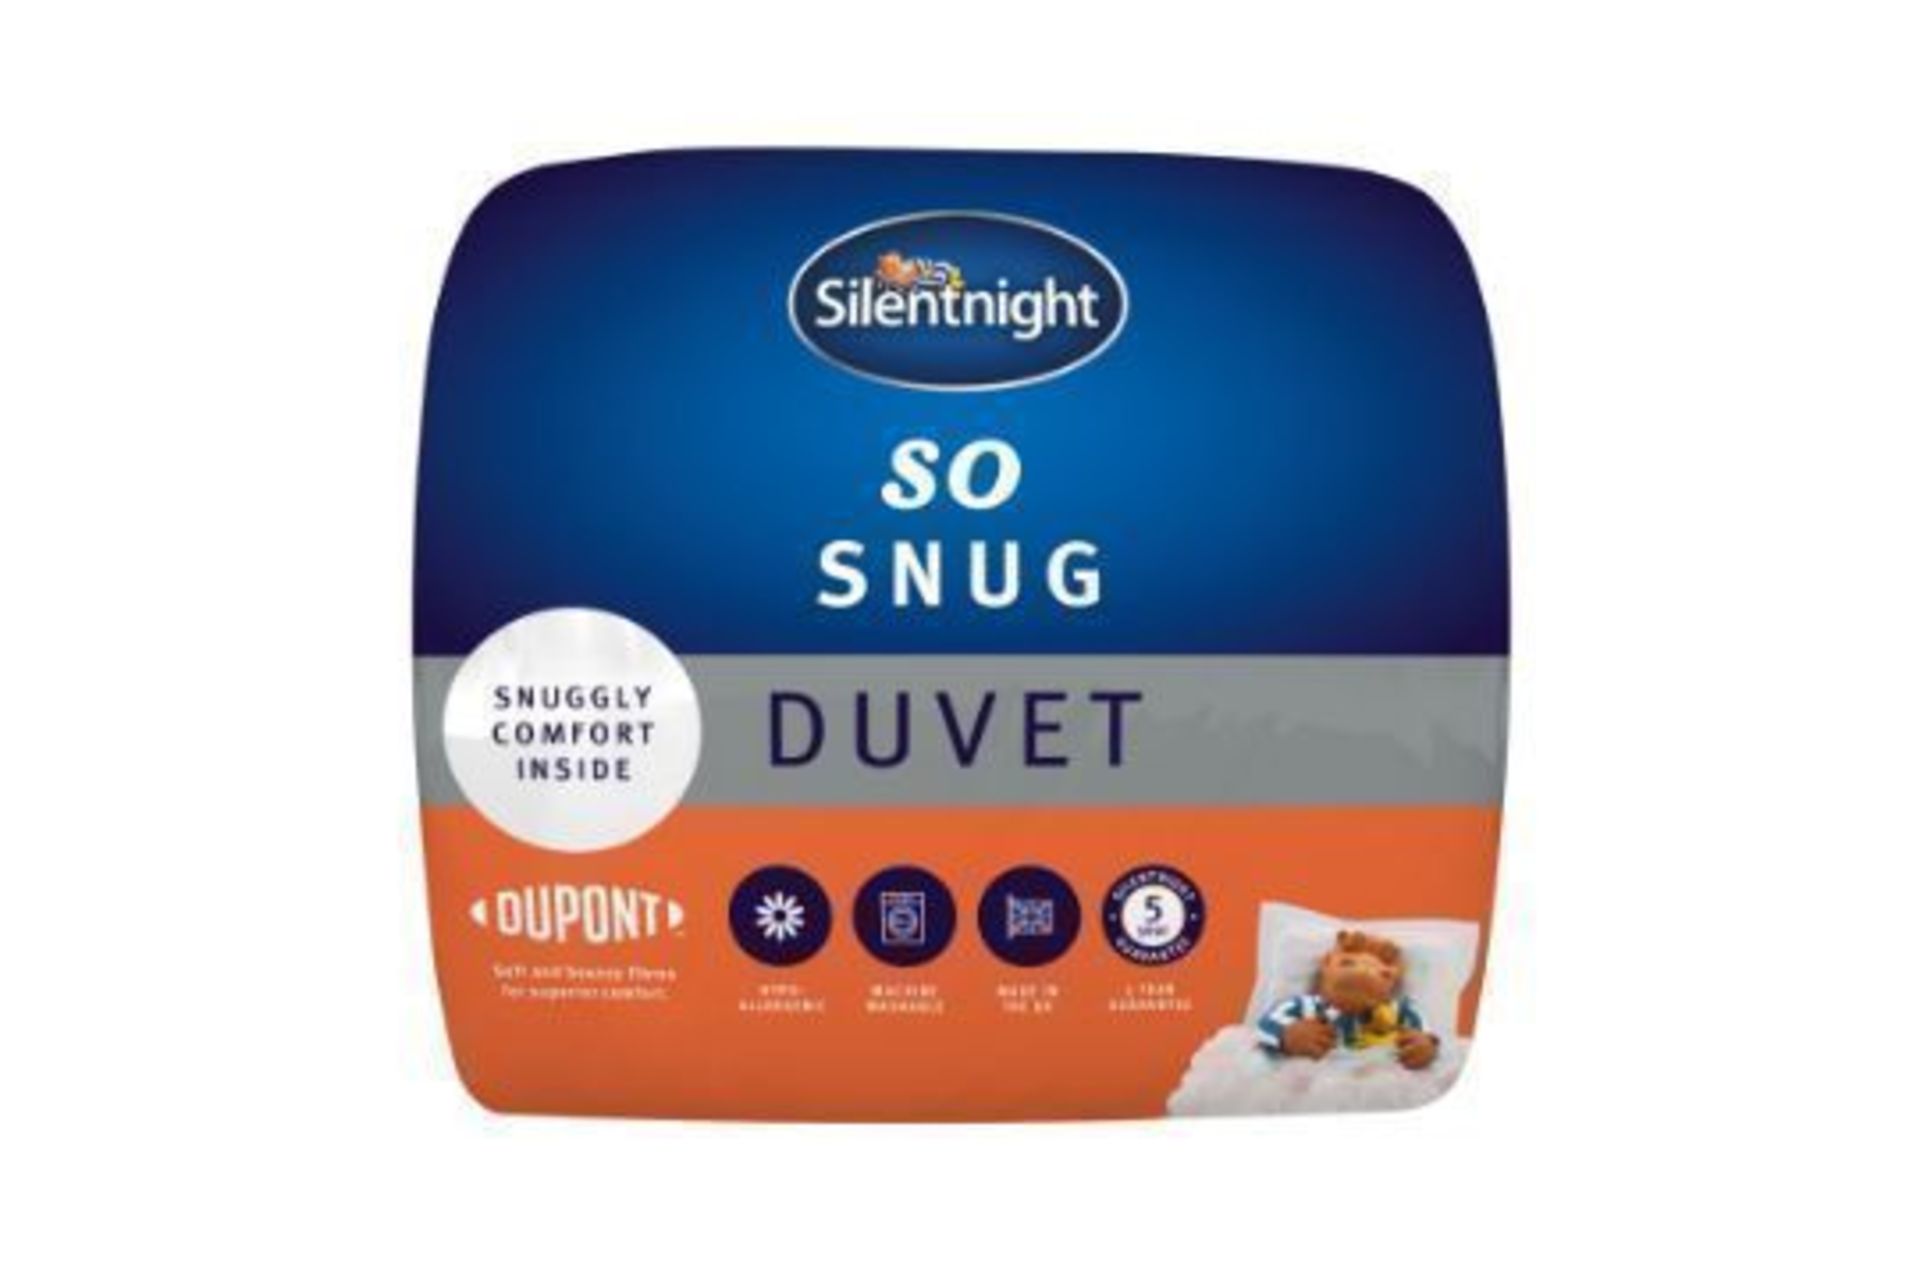 New 6ft Superking Silentnight 13.5 Tog So Snug Duvet - RRP £49. - Image 2 of 2